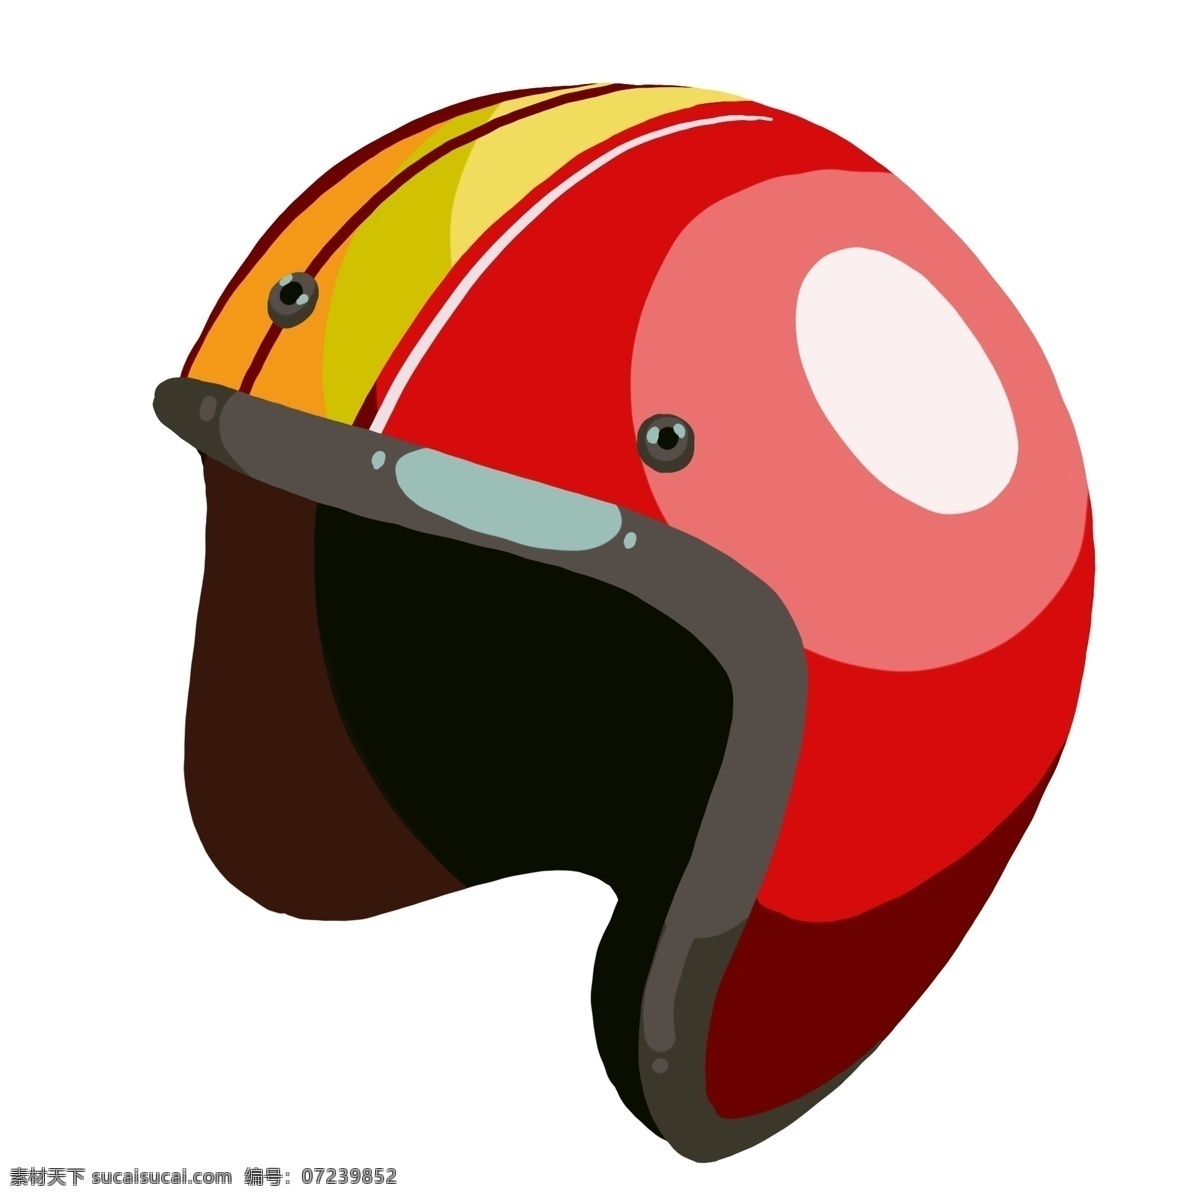 彩色 男士 头盔 插图 创意帽子头盔 精致的头盔 赛车头盔 防护帽子 时尚头盔 骑行头盔 头盔图案